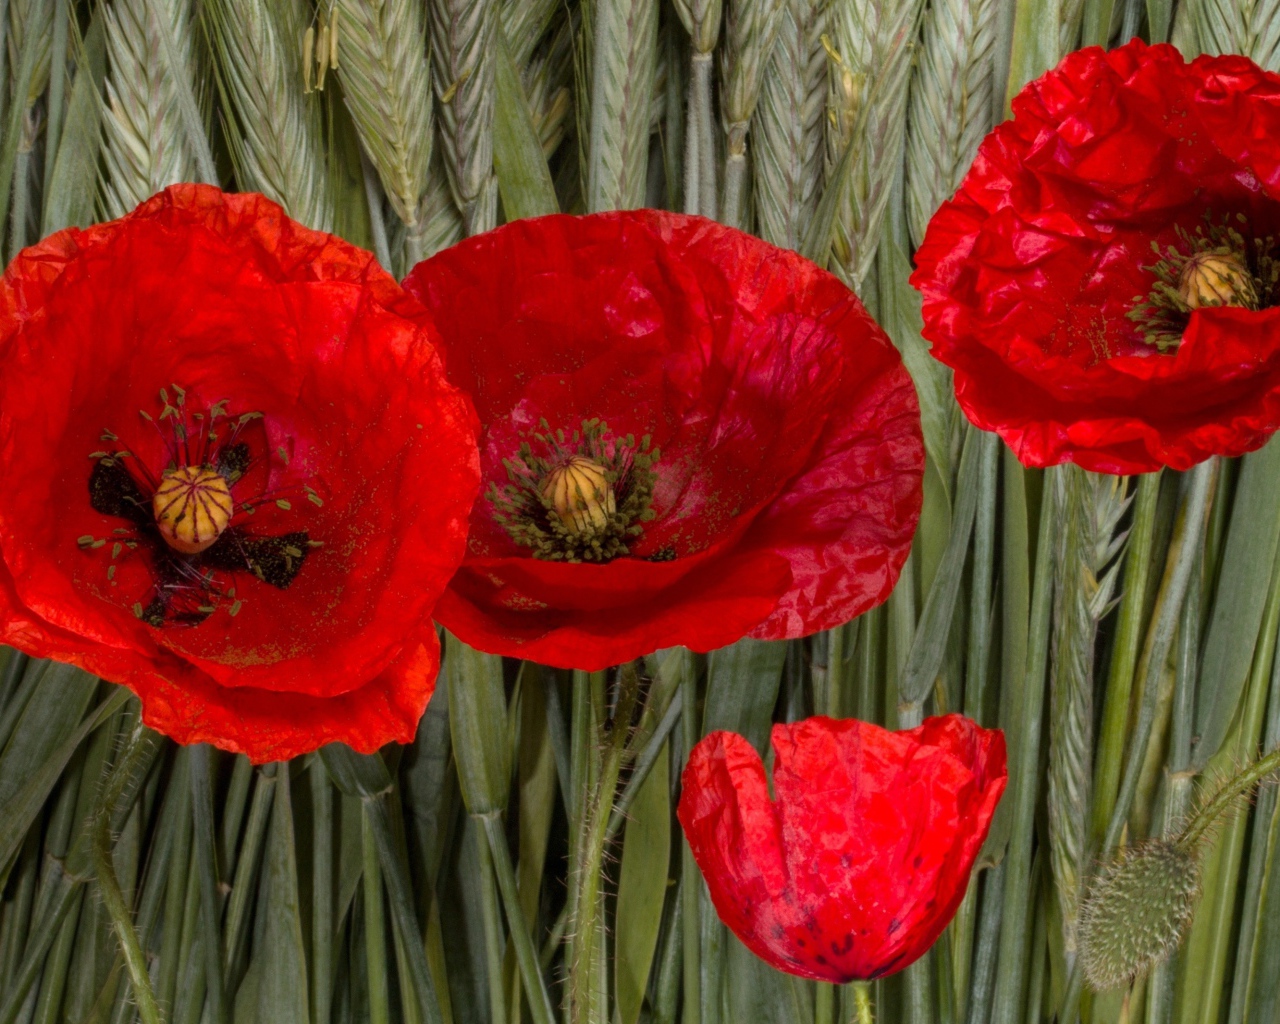 Красные цветы мака на зеленых колосках пшеницы 